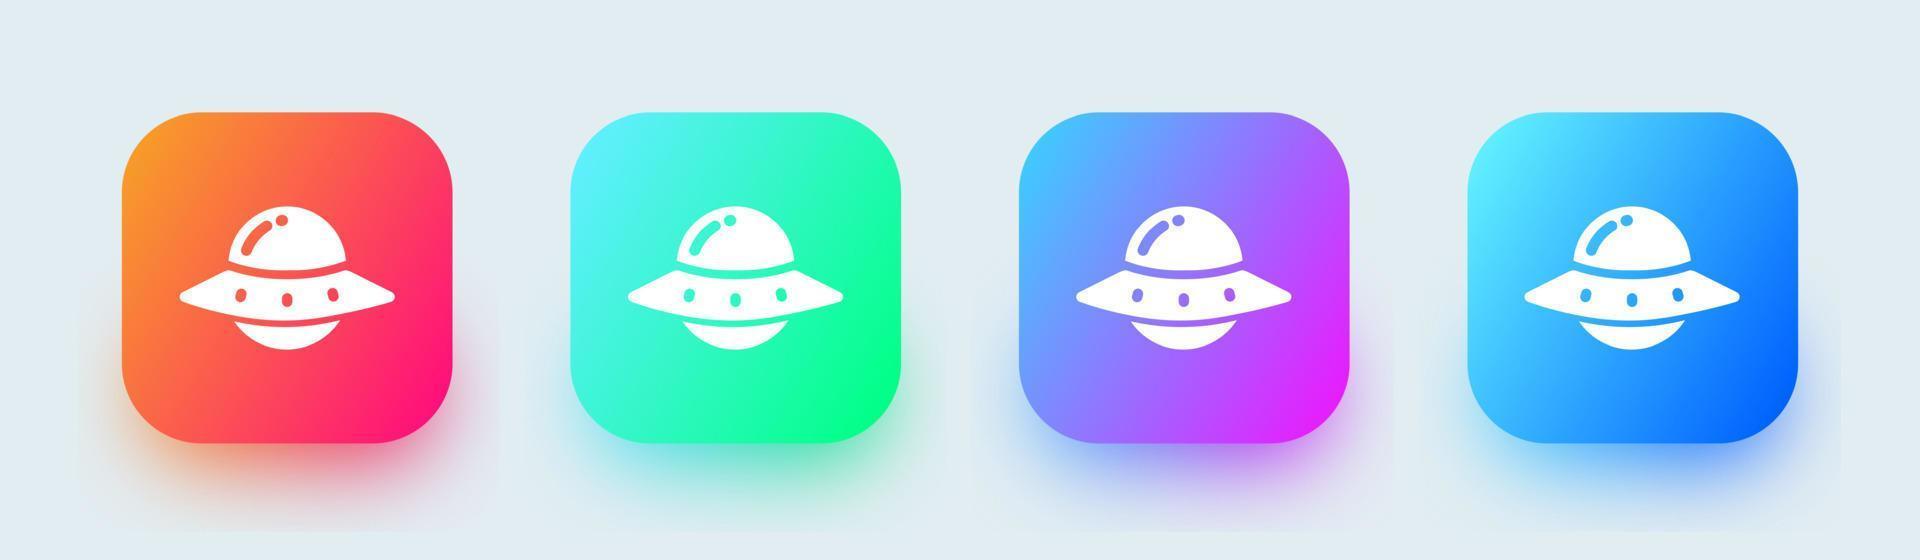 ufo solid ikon i fyrkantiga övertoningsfärger. främmande rymdskepp tecken vektor illustration.